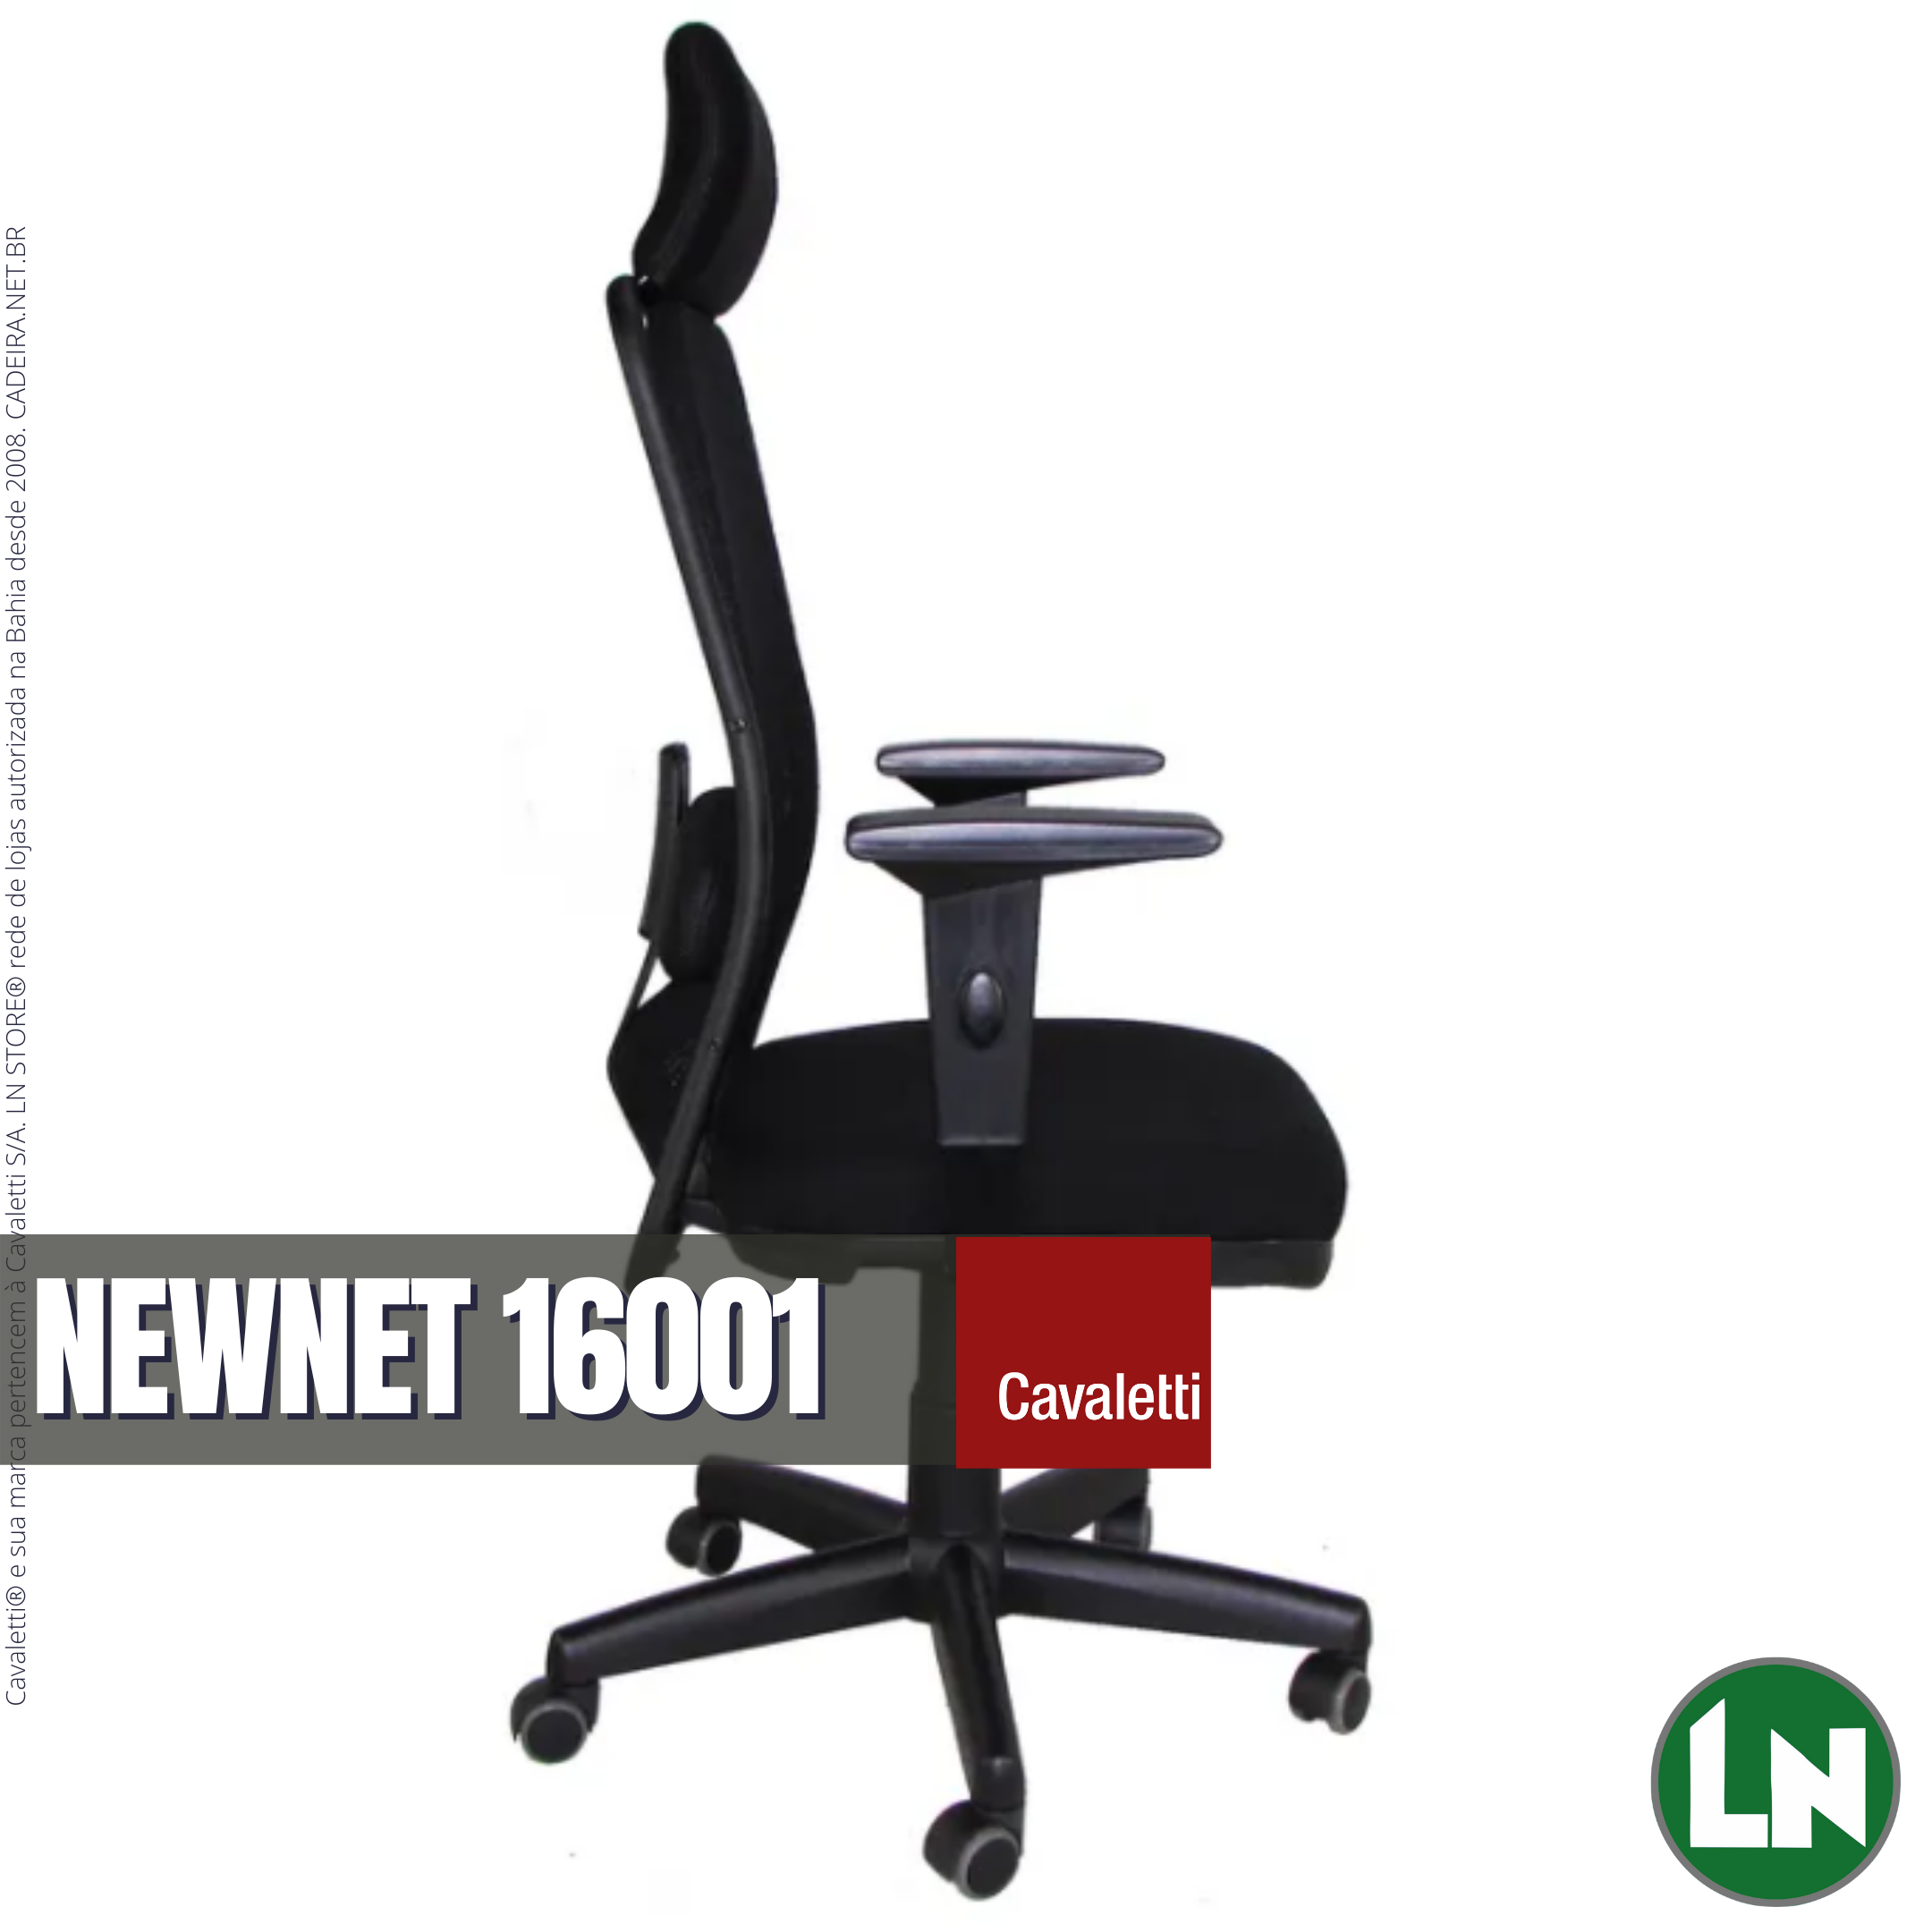 Cavaletti® NewNet 16001 AC [Entrega Super-Rápida]